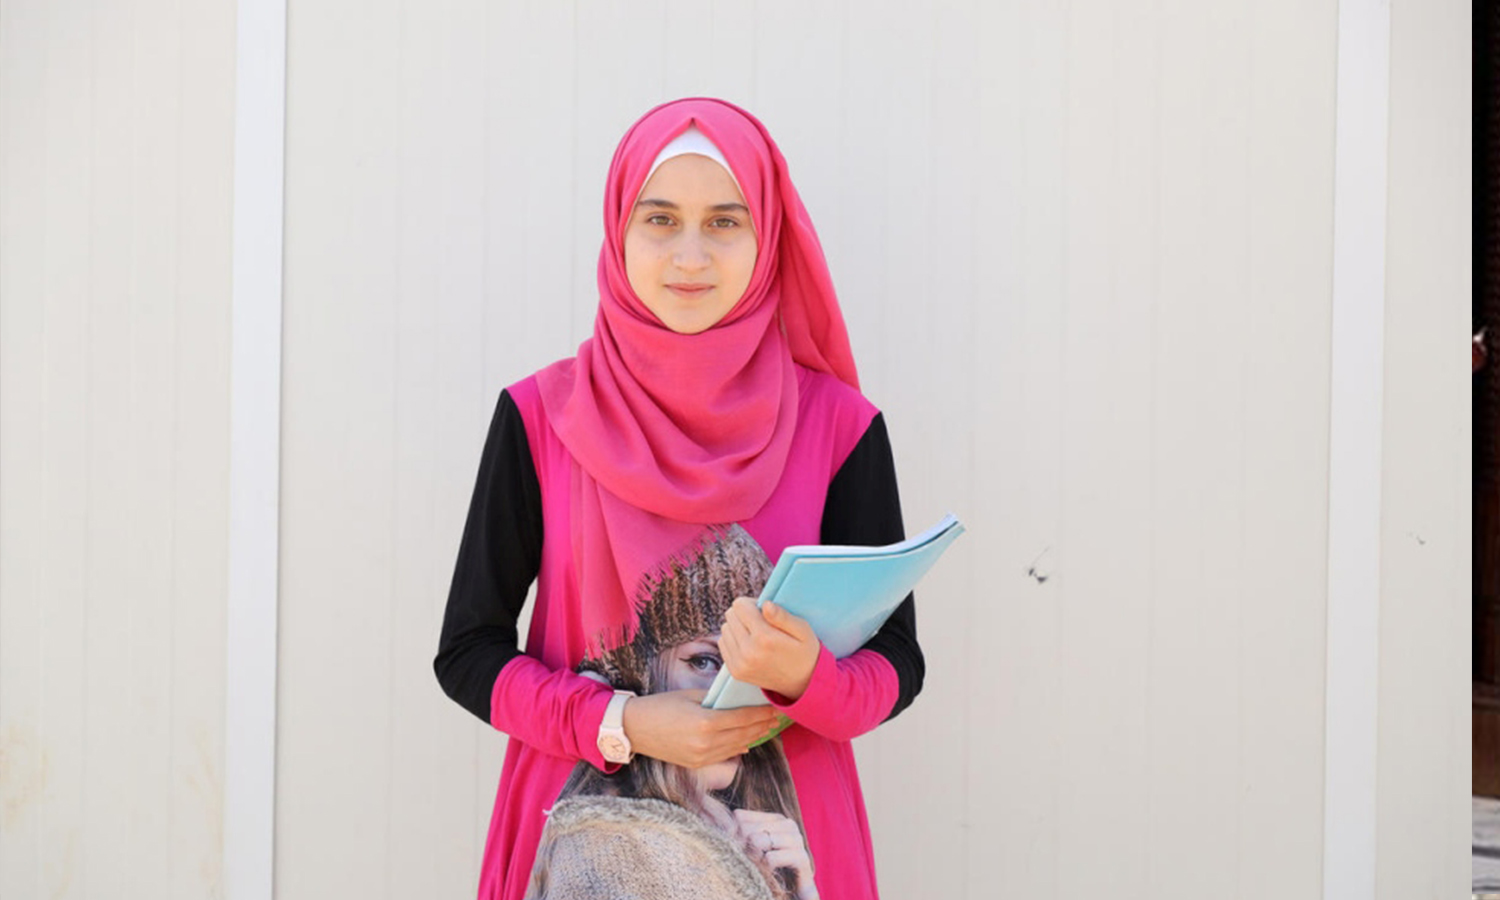 سدرة مدين الغوثاني ، لاجئة سورية تبلغ من العمر 14 عامًا ، تساعد شقيقها وأطفال جارها على الدراسة أثناء إغلاق المدارس في مخيم الزعتري للاجئين في الأردن